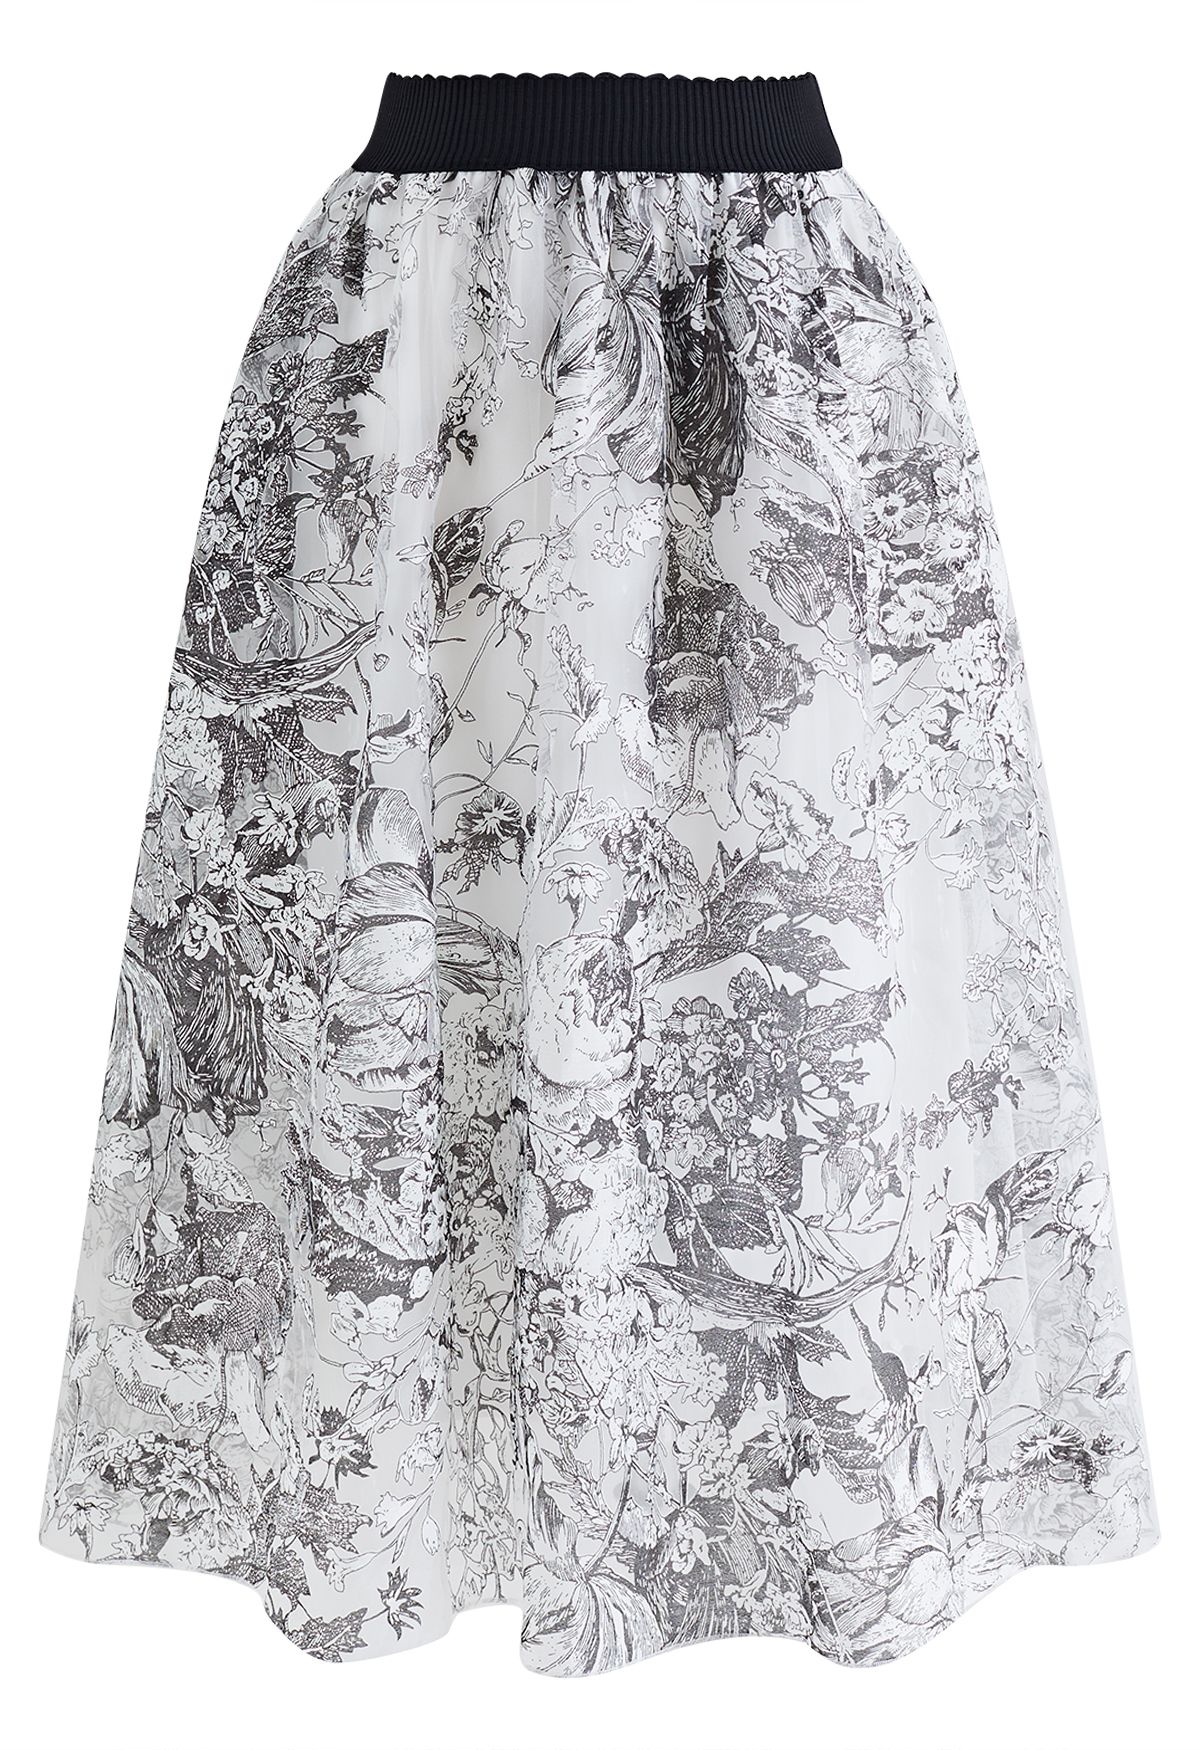 Floral Sketch Bowknot Waist Organza Skirt